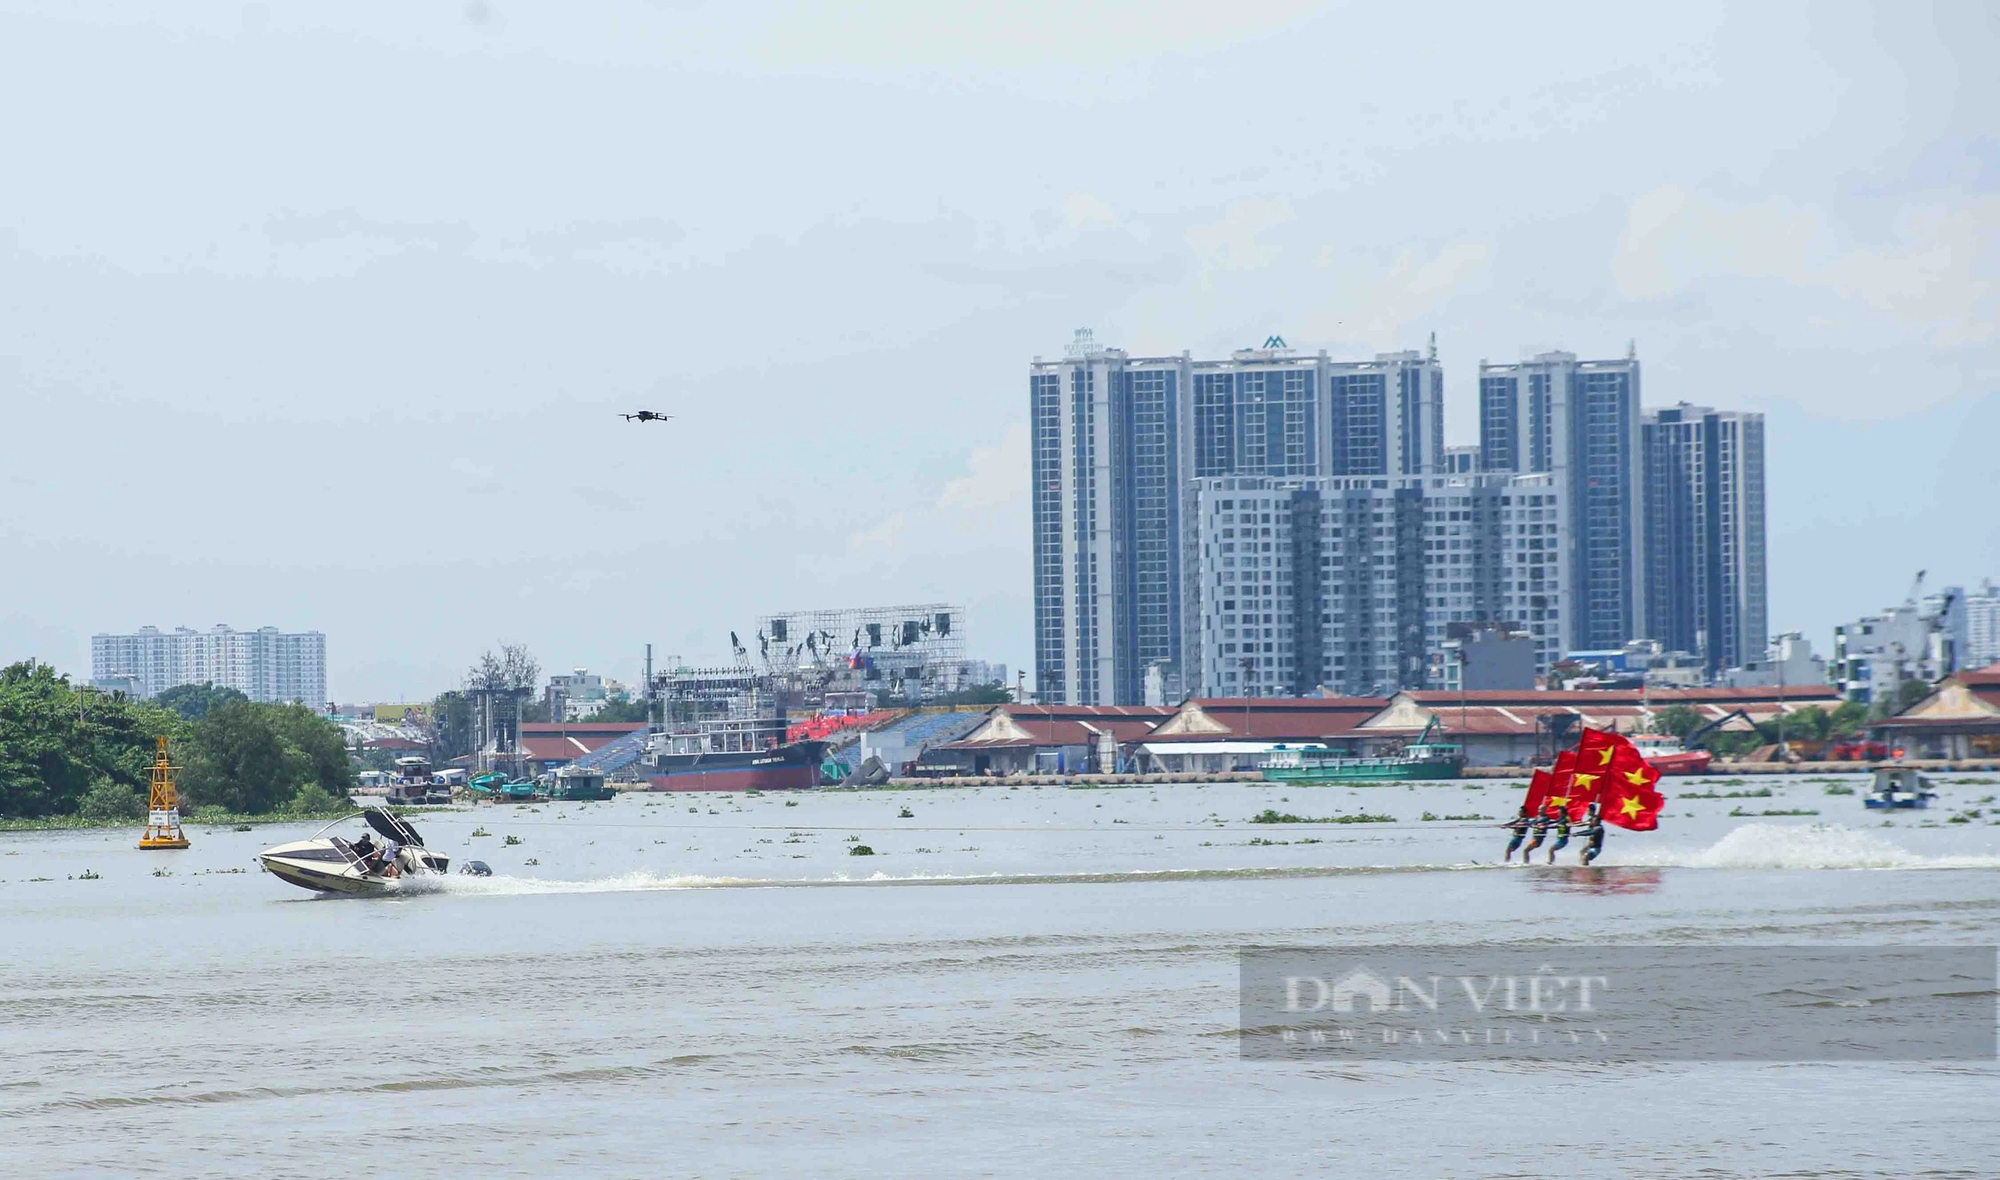 Người dân Sài Gòn đội nắng xem biểu diễn thể thao đẹp mắt trên sông nước- Ảnh 8.